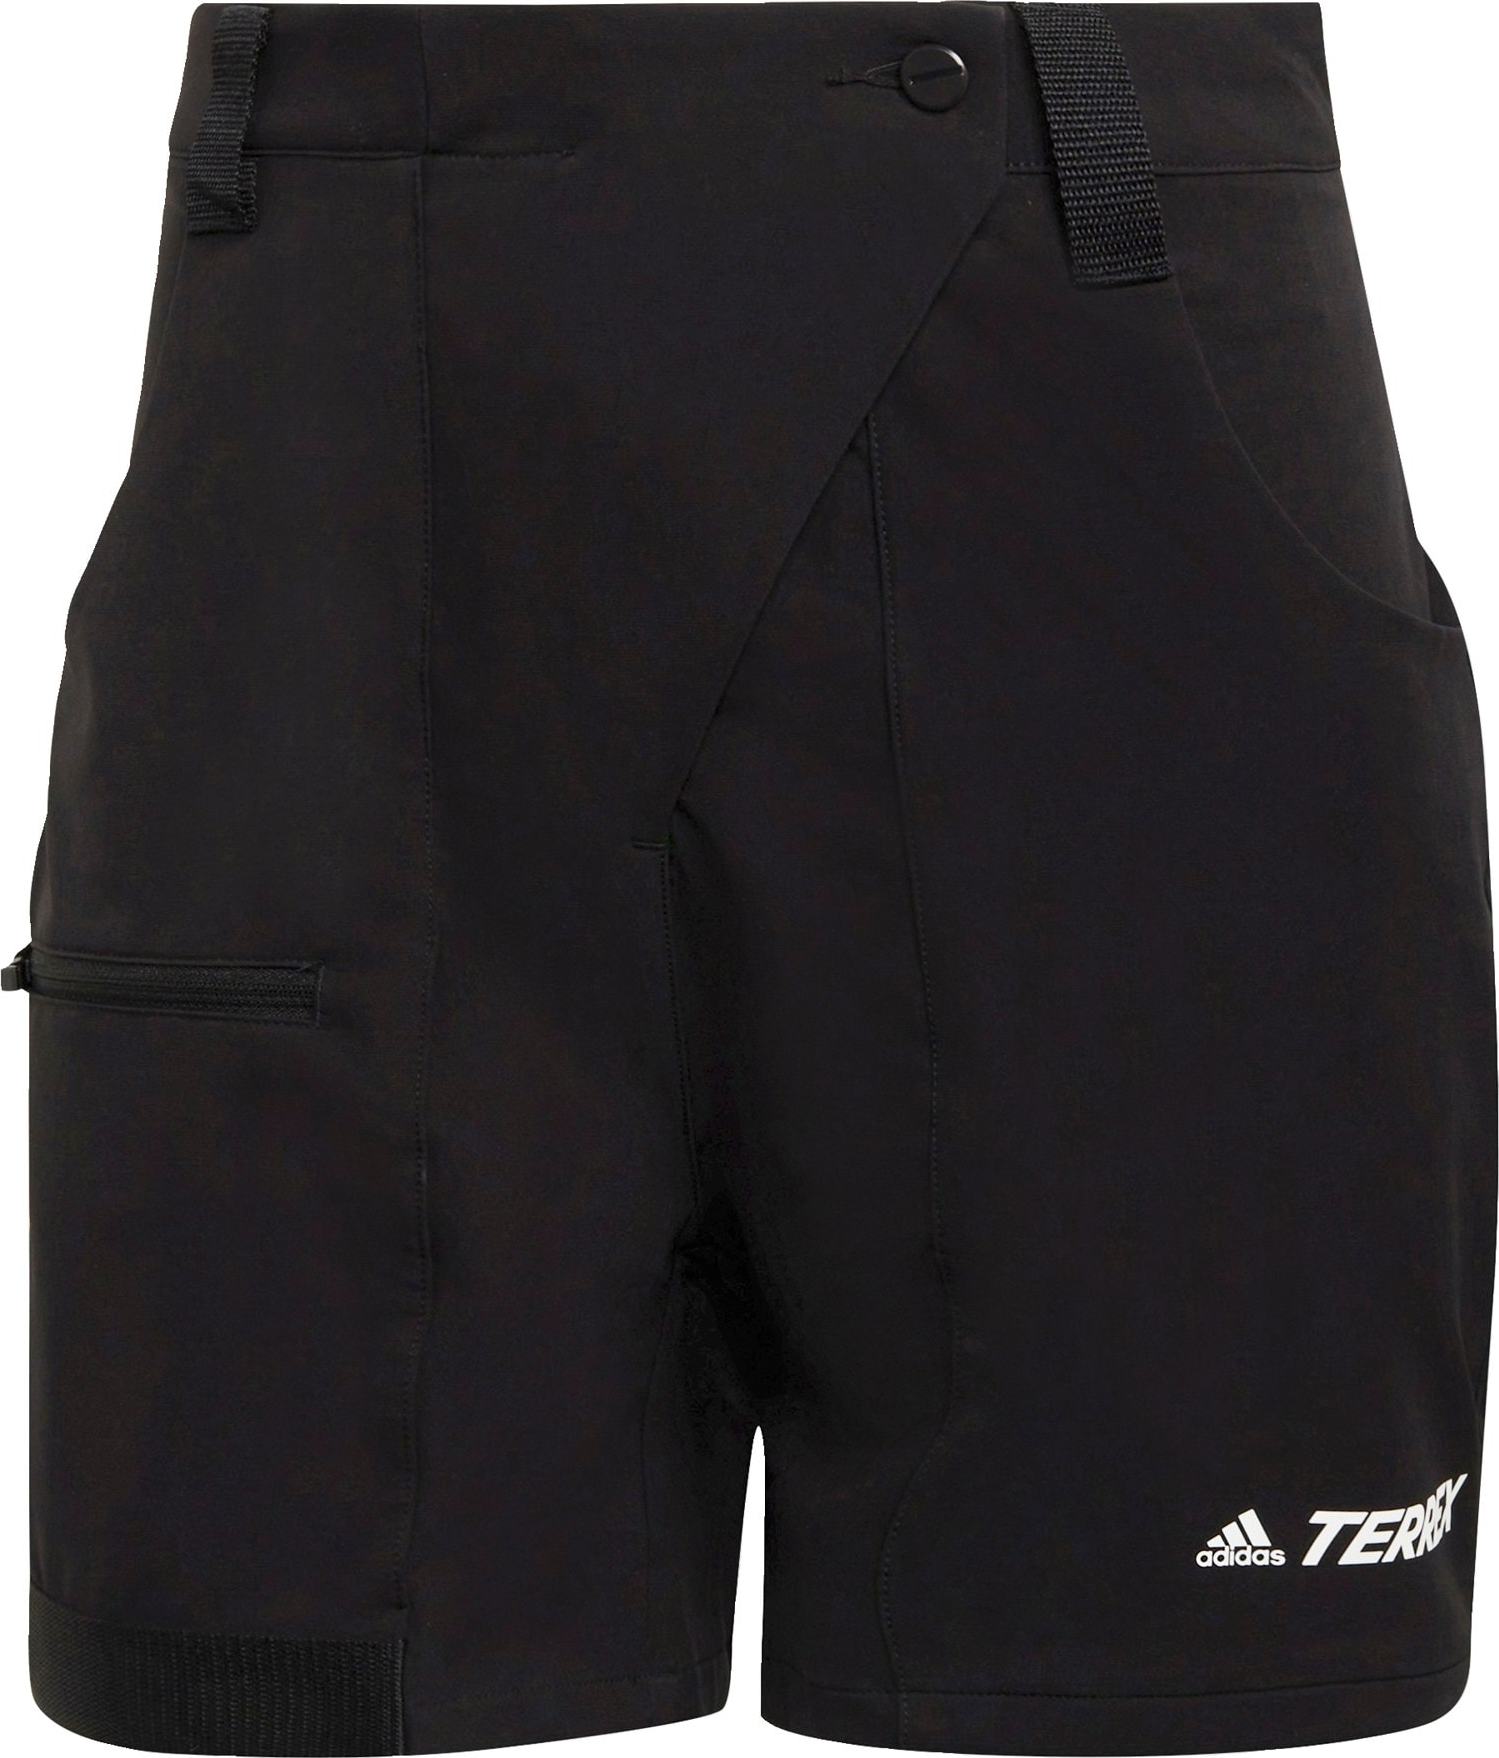 Sportovní kalhoty adidas Terrex černá / bílá